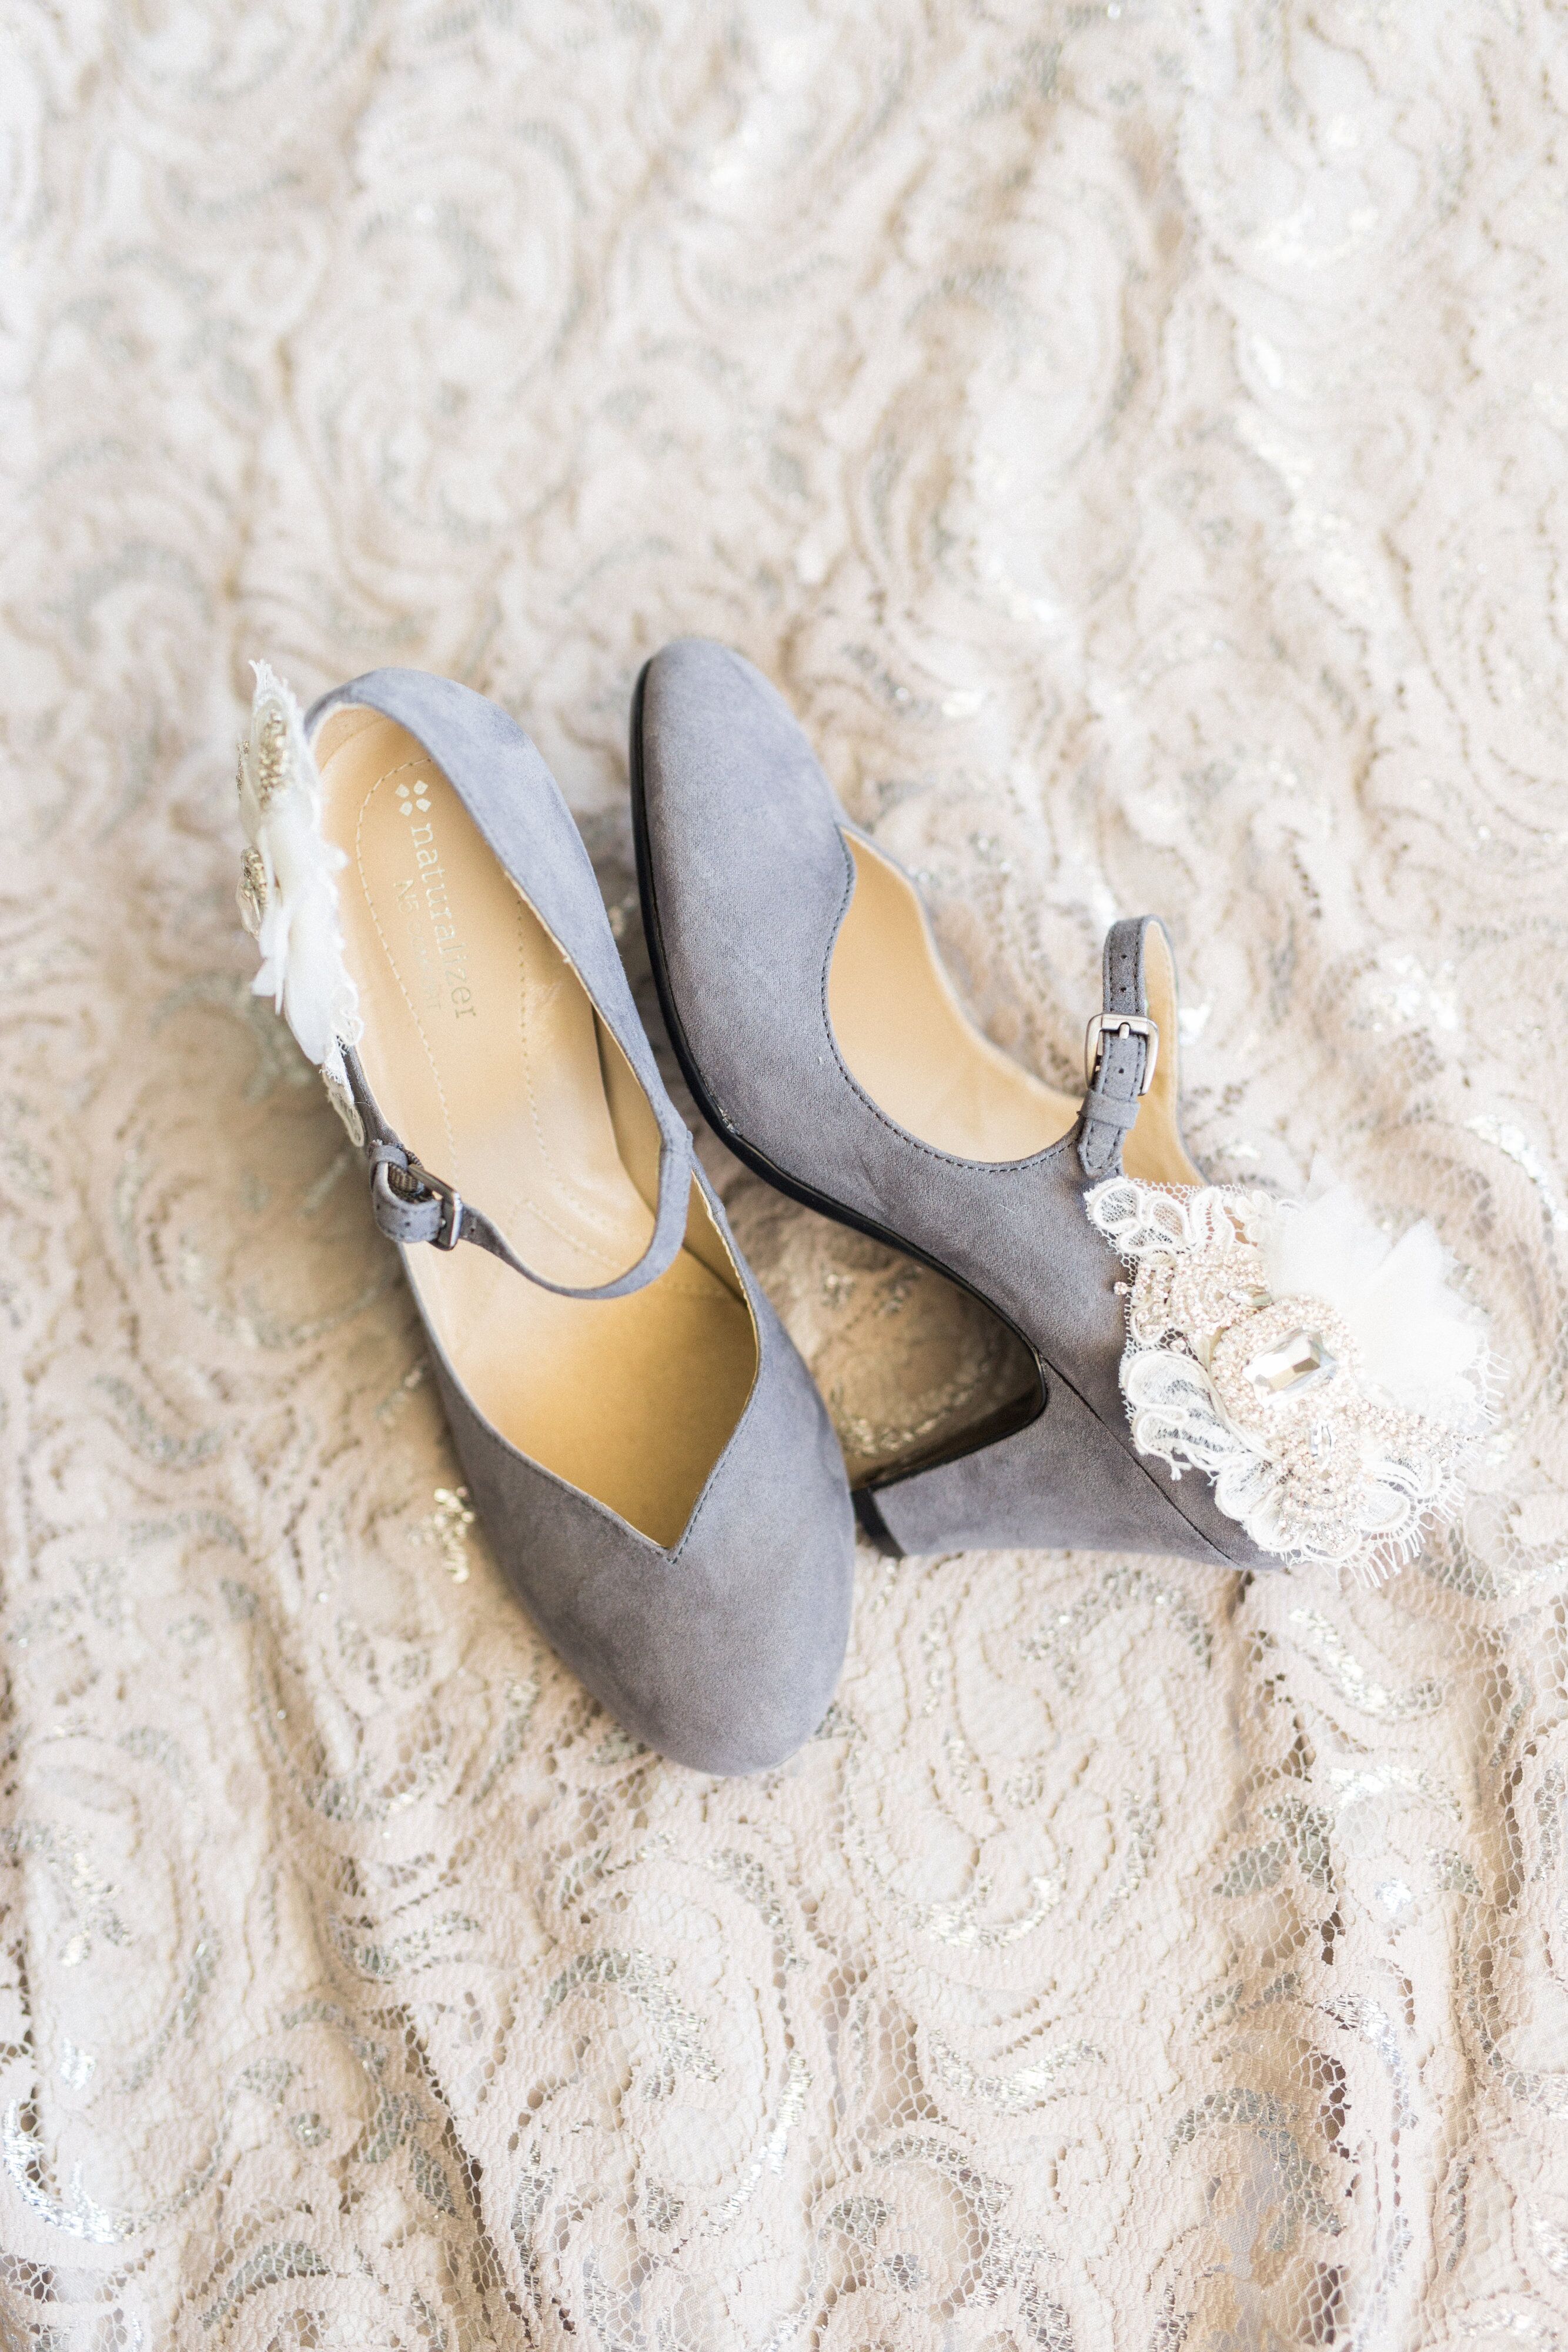 lavender bridal shoes